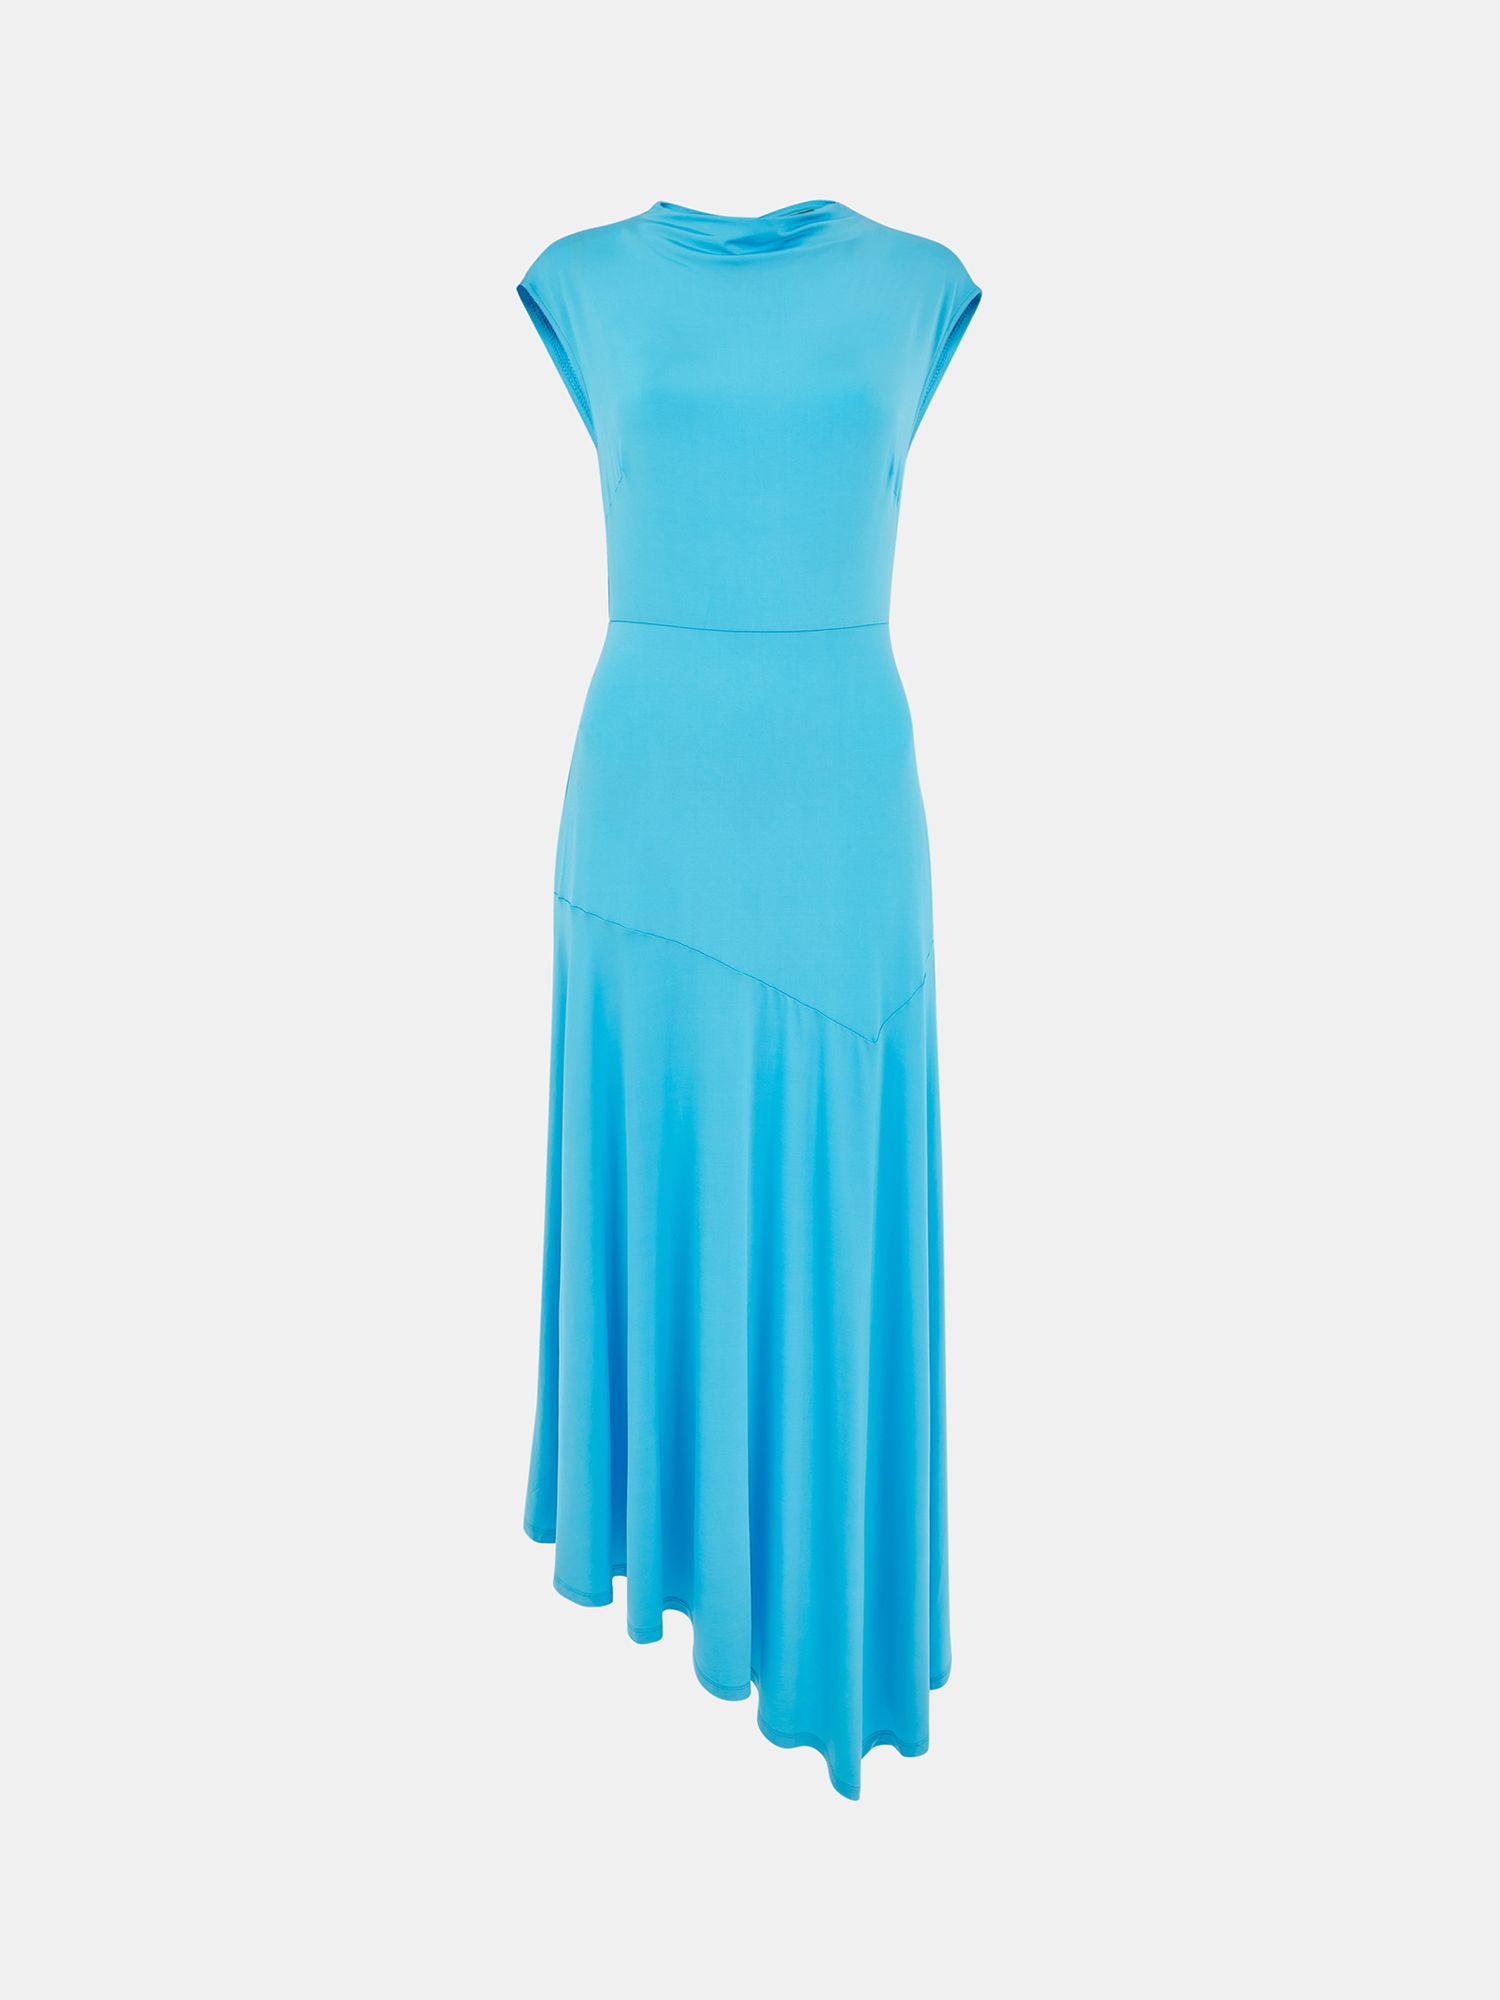 Whistles Iris Asymmetric Jersey Midi Dress, Turquoise, 6